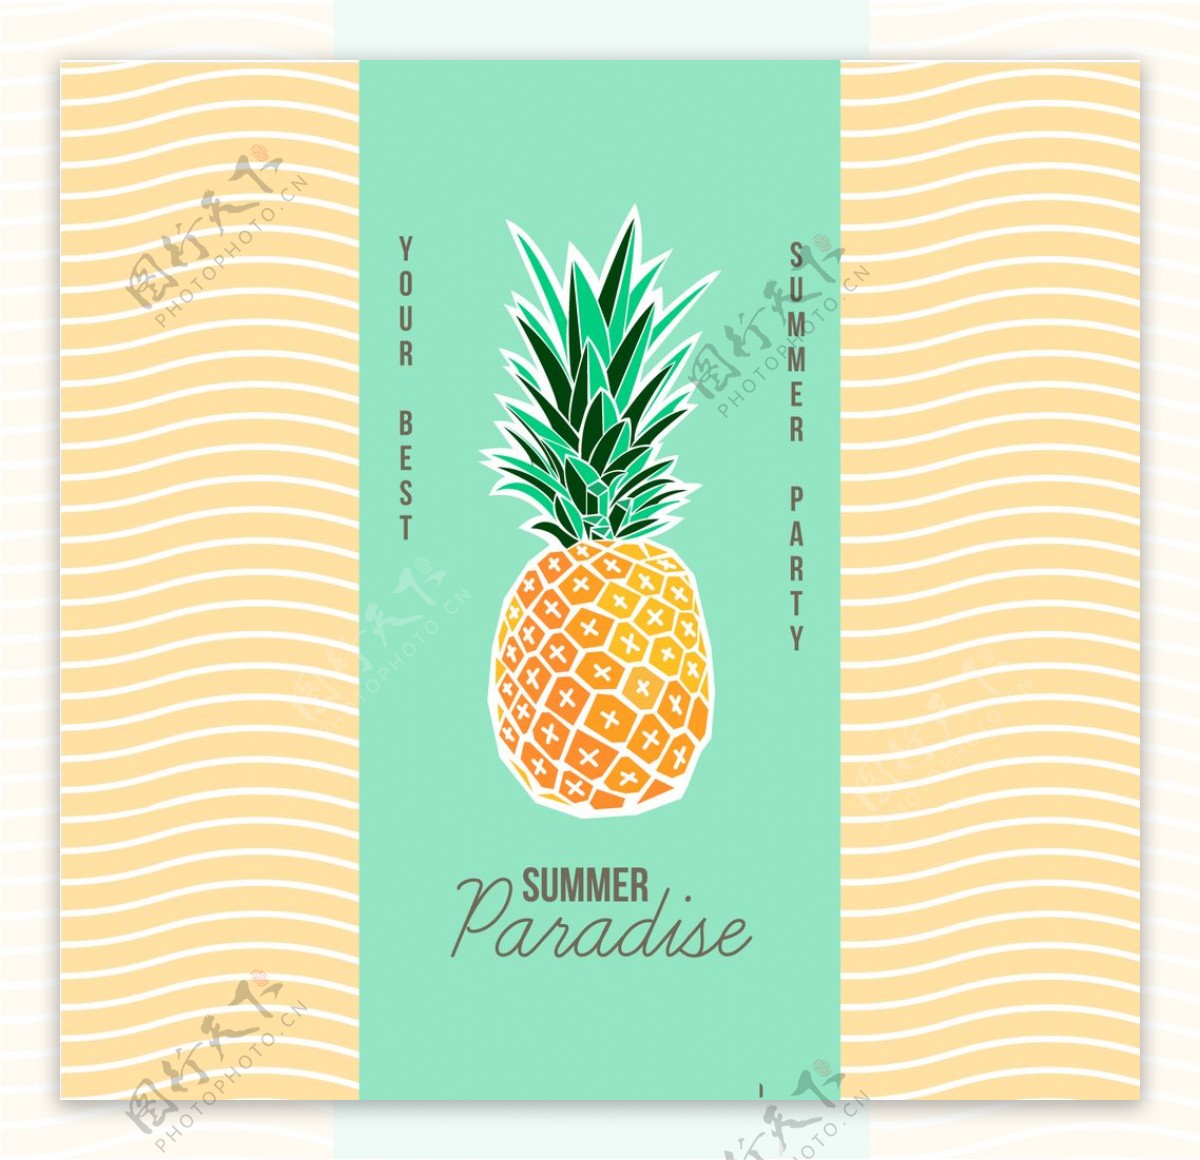 夏季菠萝海报